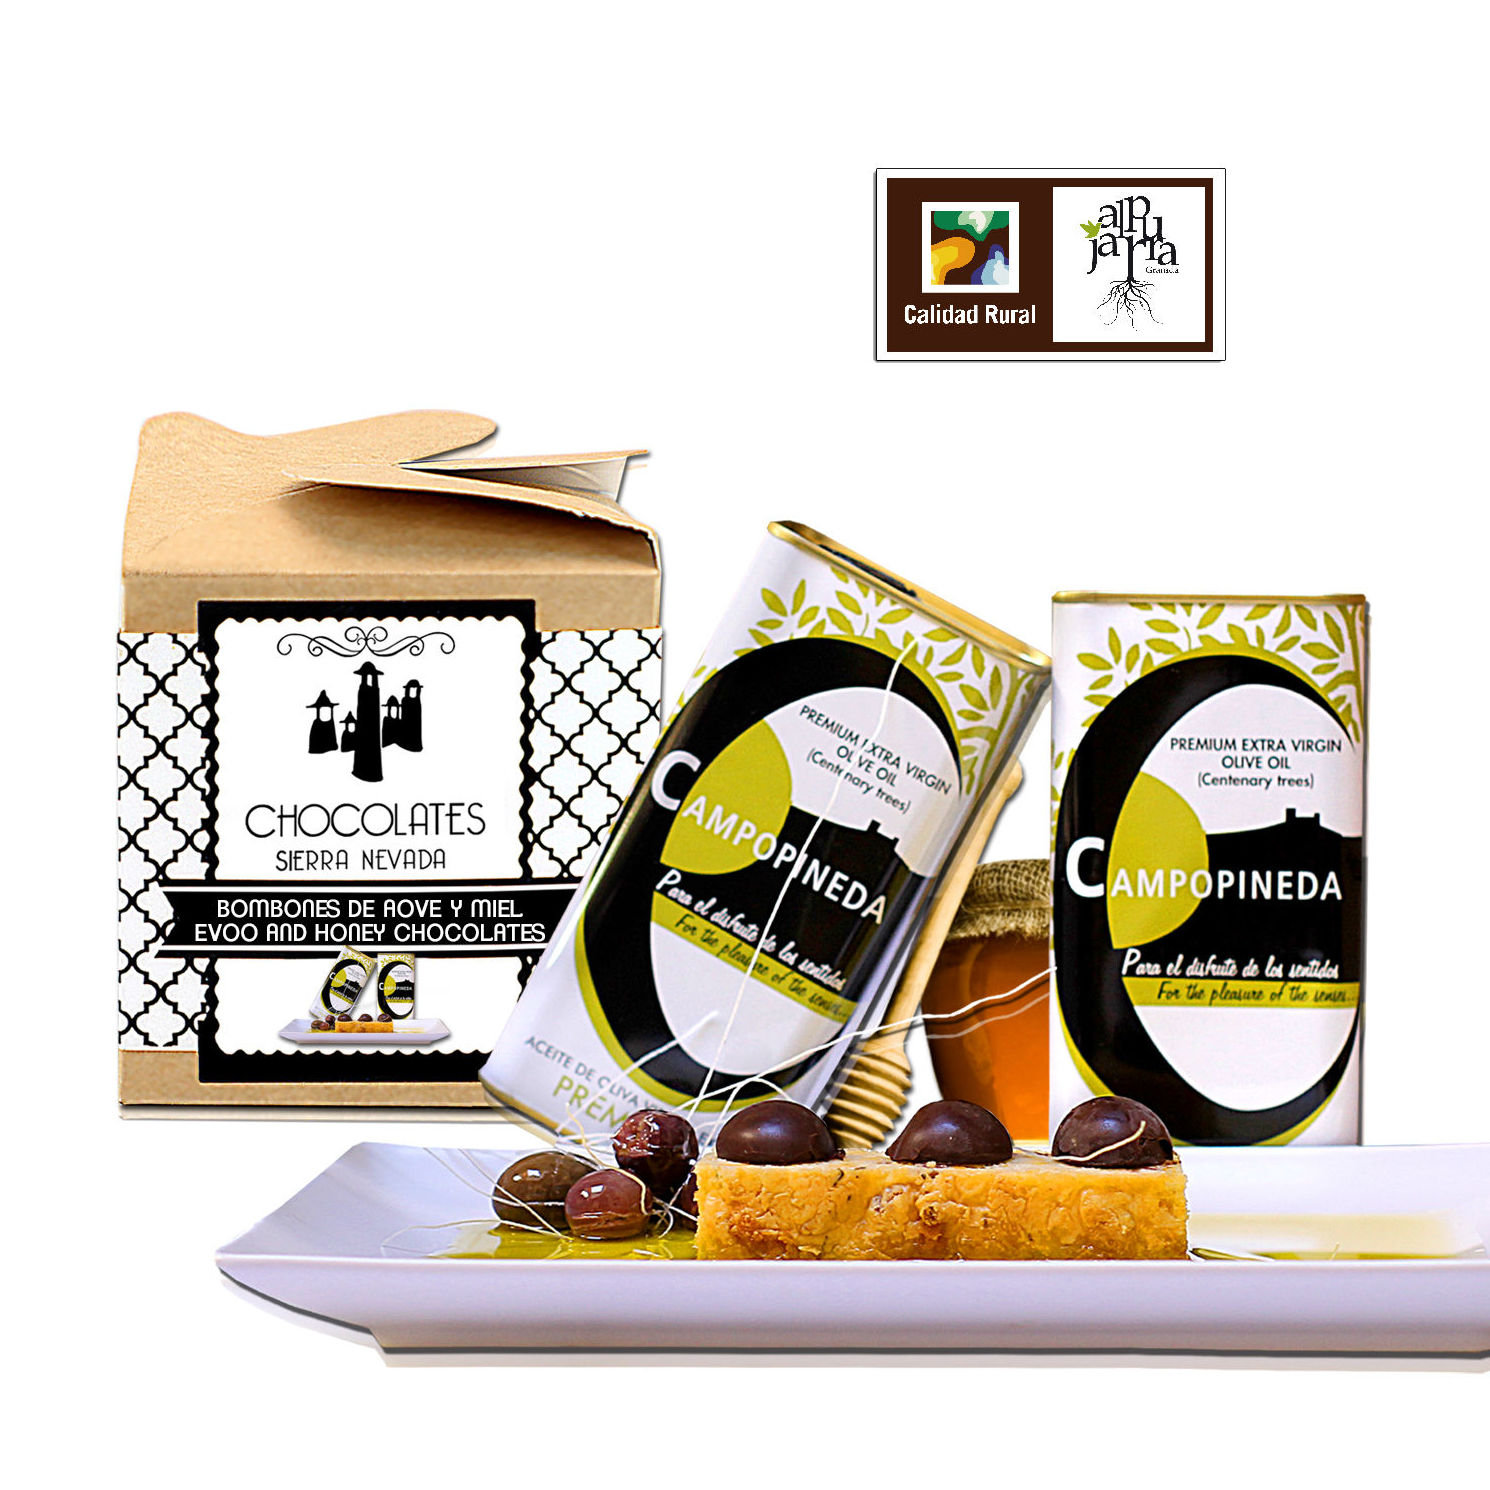 Bombones con aceite de oliva y miel: Nuestros productos de Chocolates Sierra Nevada }}